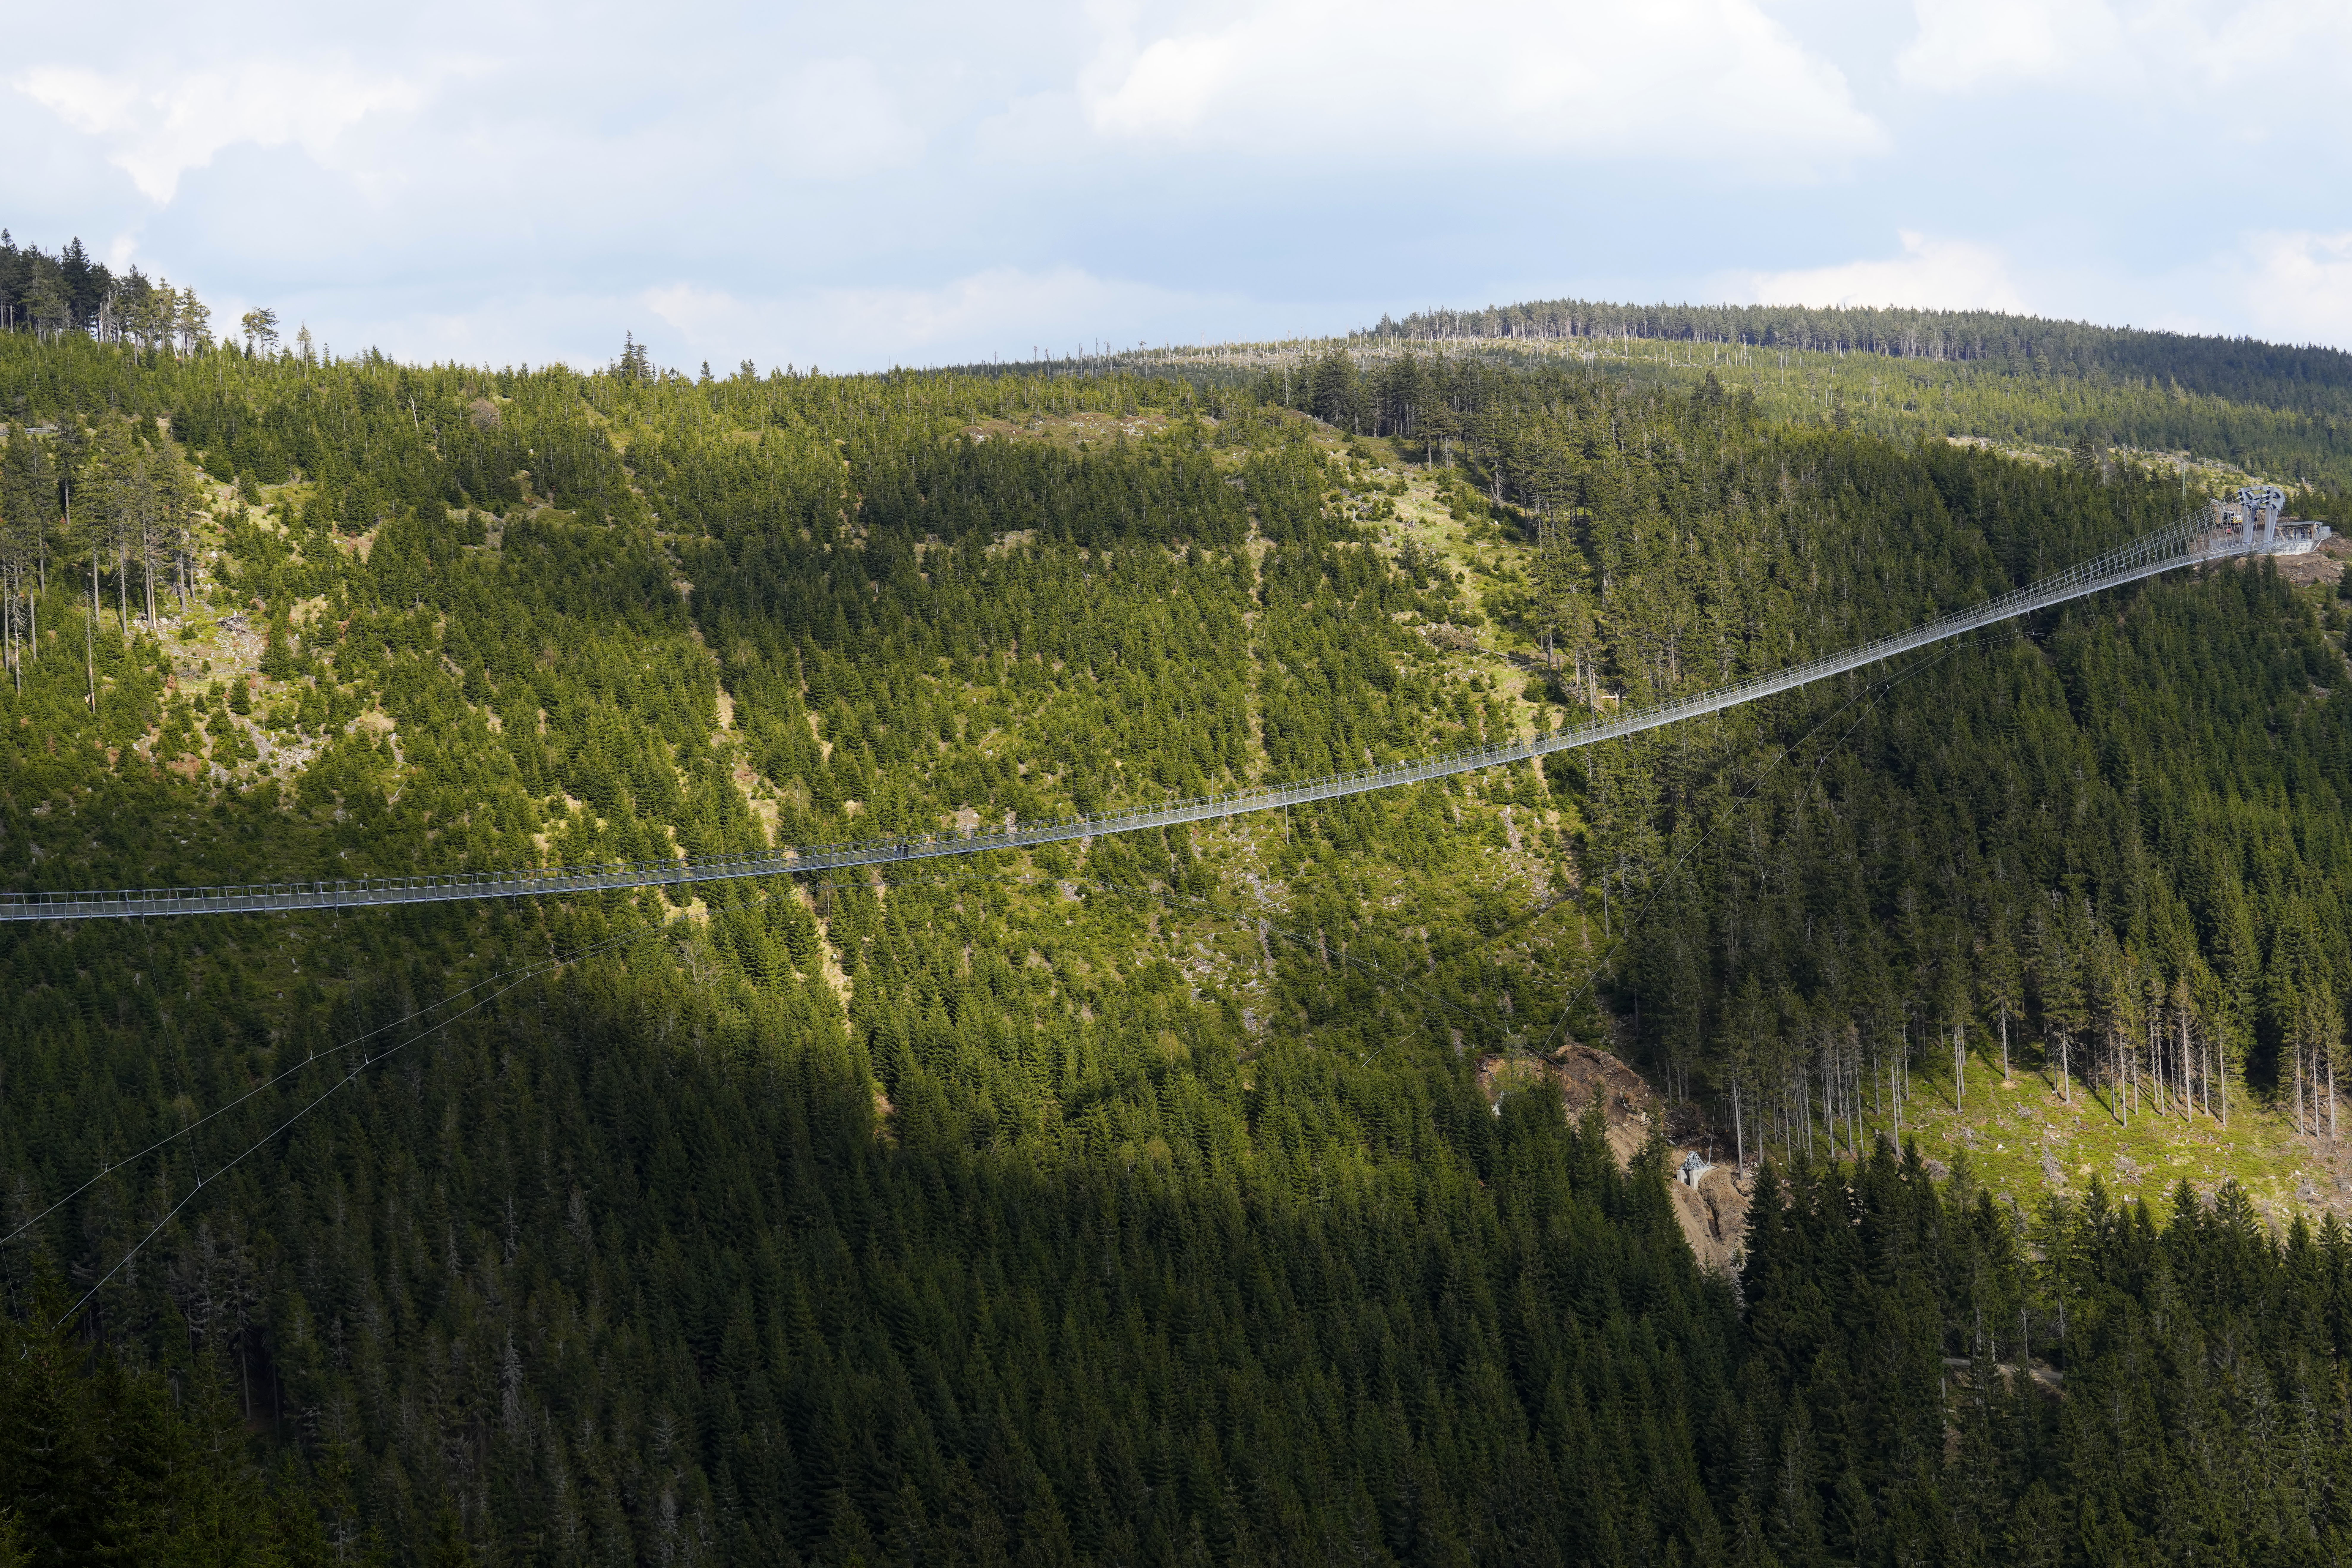 <p>Най-дългият висящ пешeходен мост в света бе открит в Чехия. Съоръжението е с дължина от 721 метра и виси на 95 метра над земята в най-високата си точка. То свързва два планински хребета и е на повече от 1100 метра надморска височина. Наречено е &quot;Небесен мост 721&quot; и се намира в североизточната част на Чехия, в планината Кралички Снежник, близо до границата с Полша.</p>